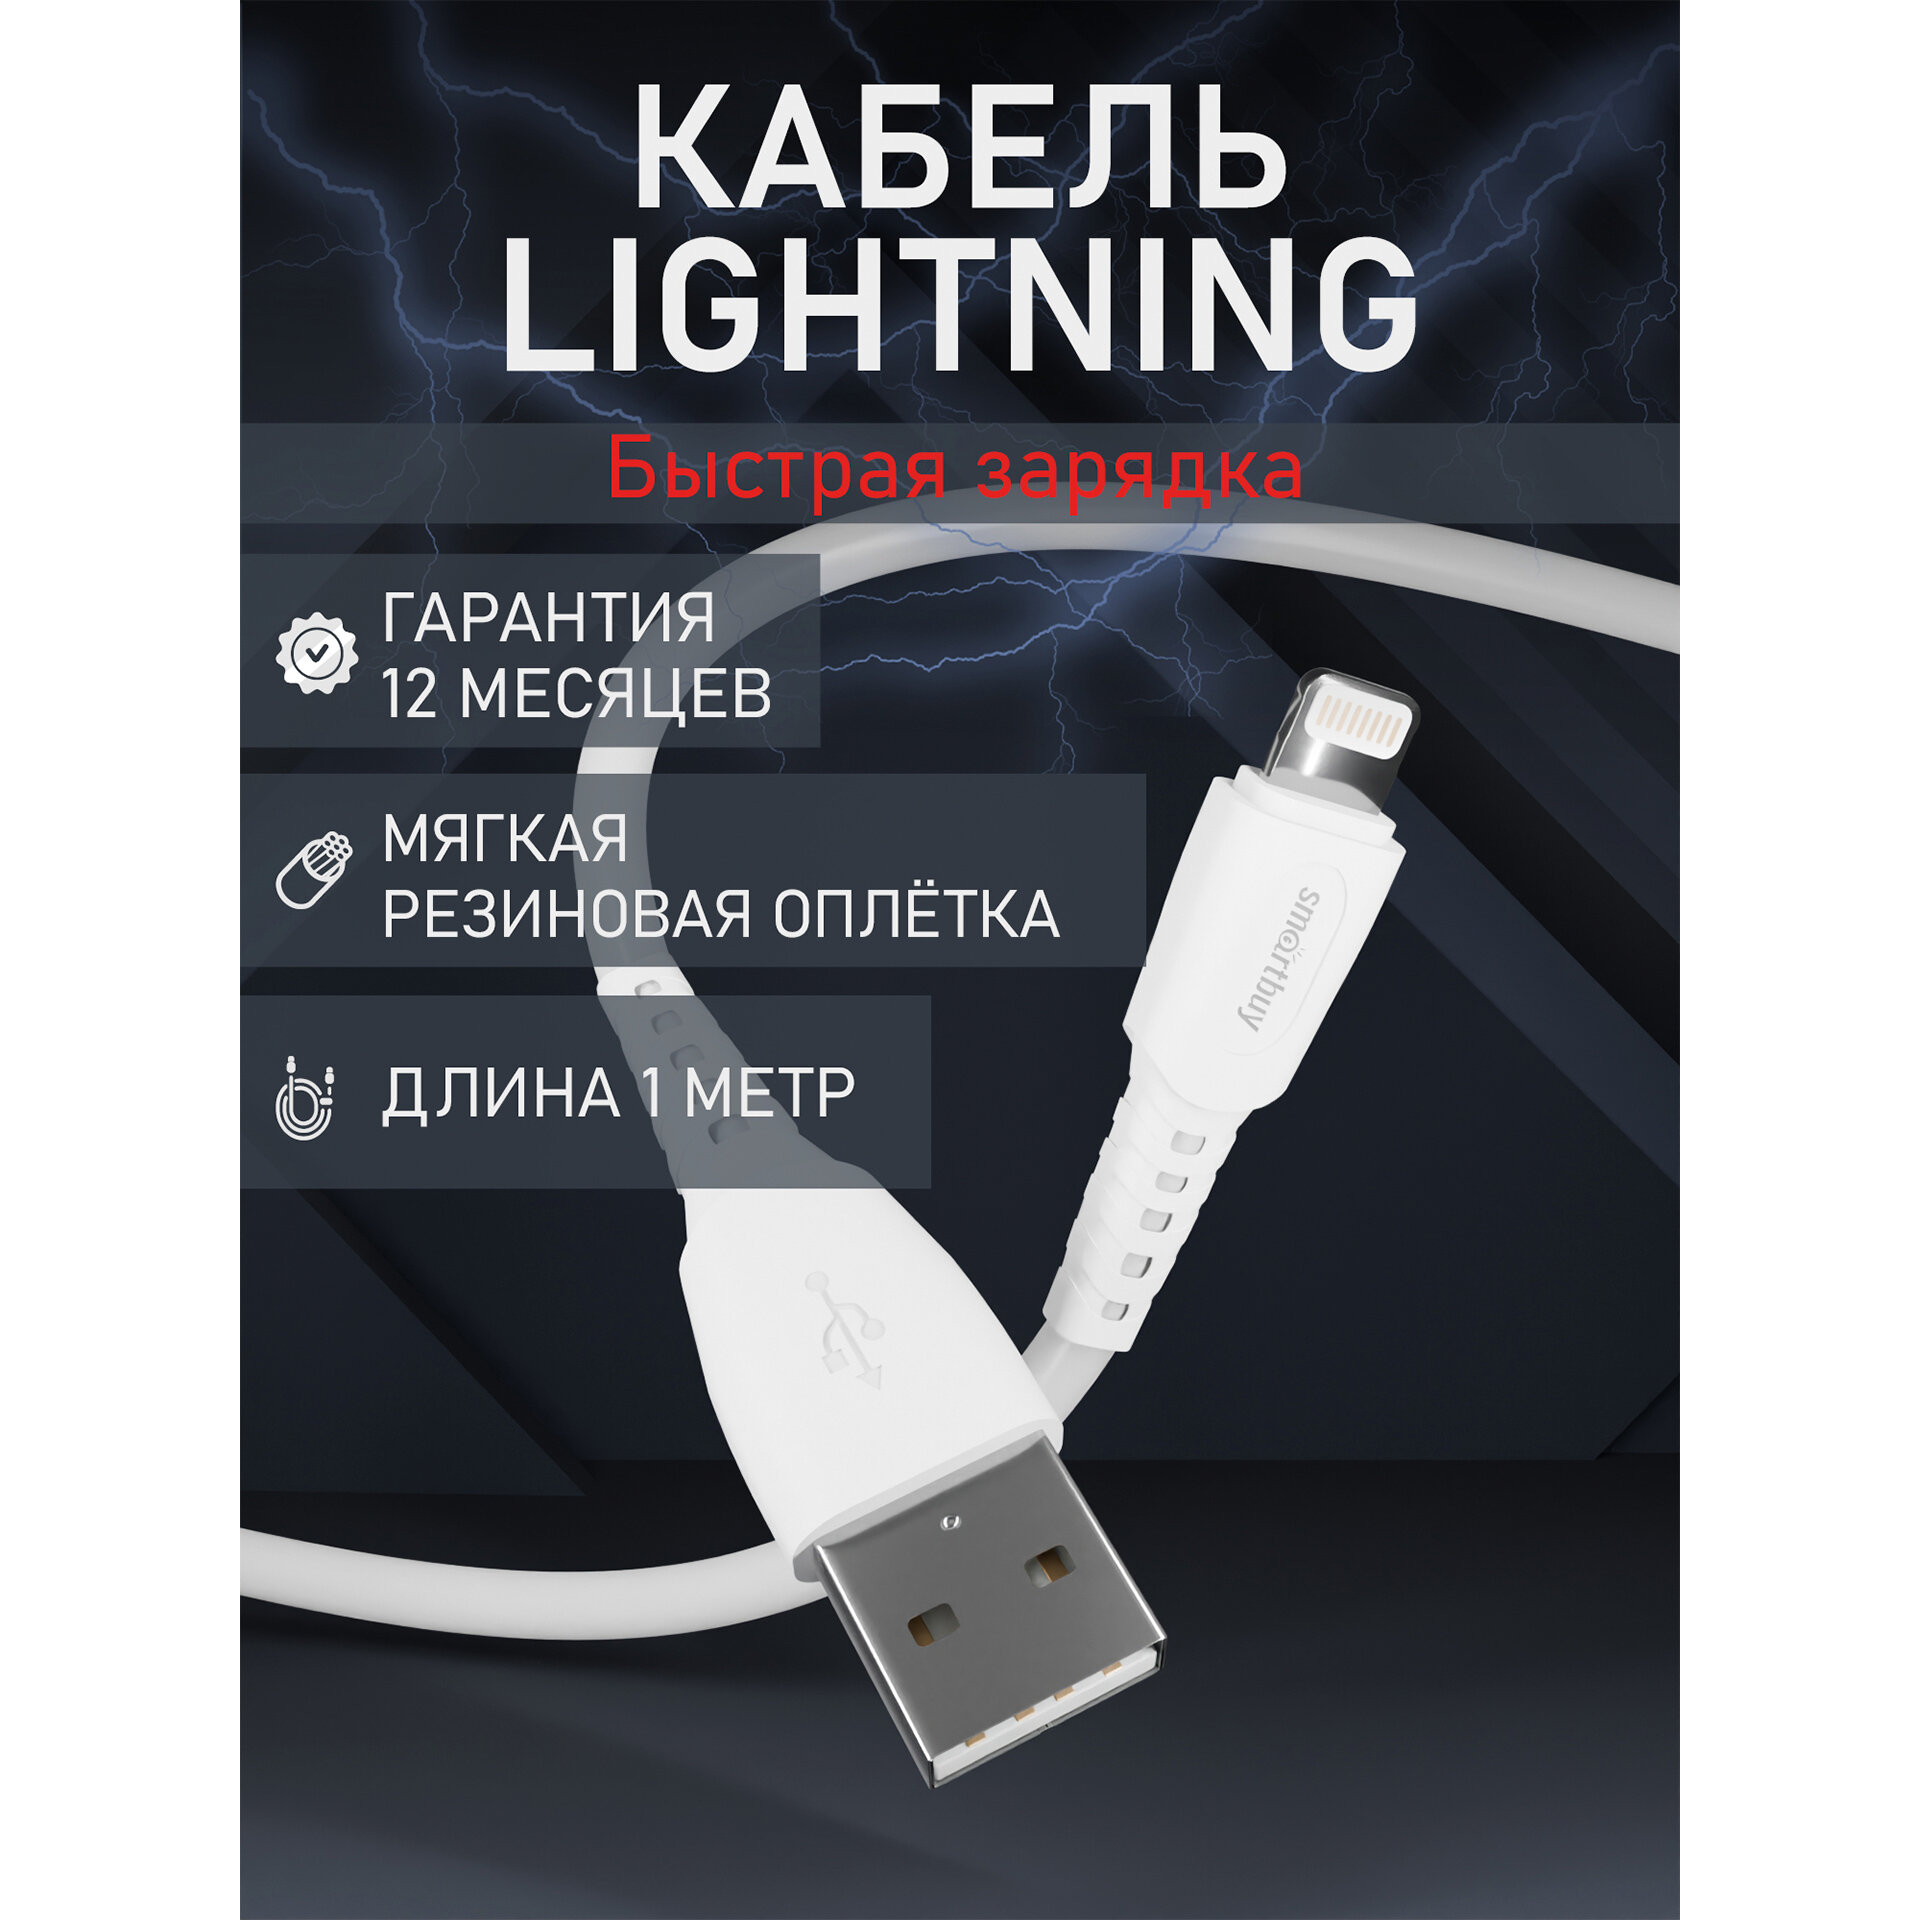 Кабель для зарядки и передачи данных S40 Lightning белый 2.4 А 1 м Smartbuy (iK-512-S40w)